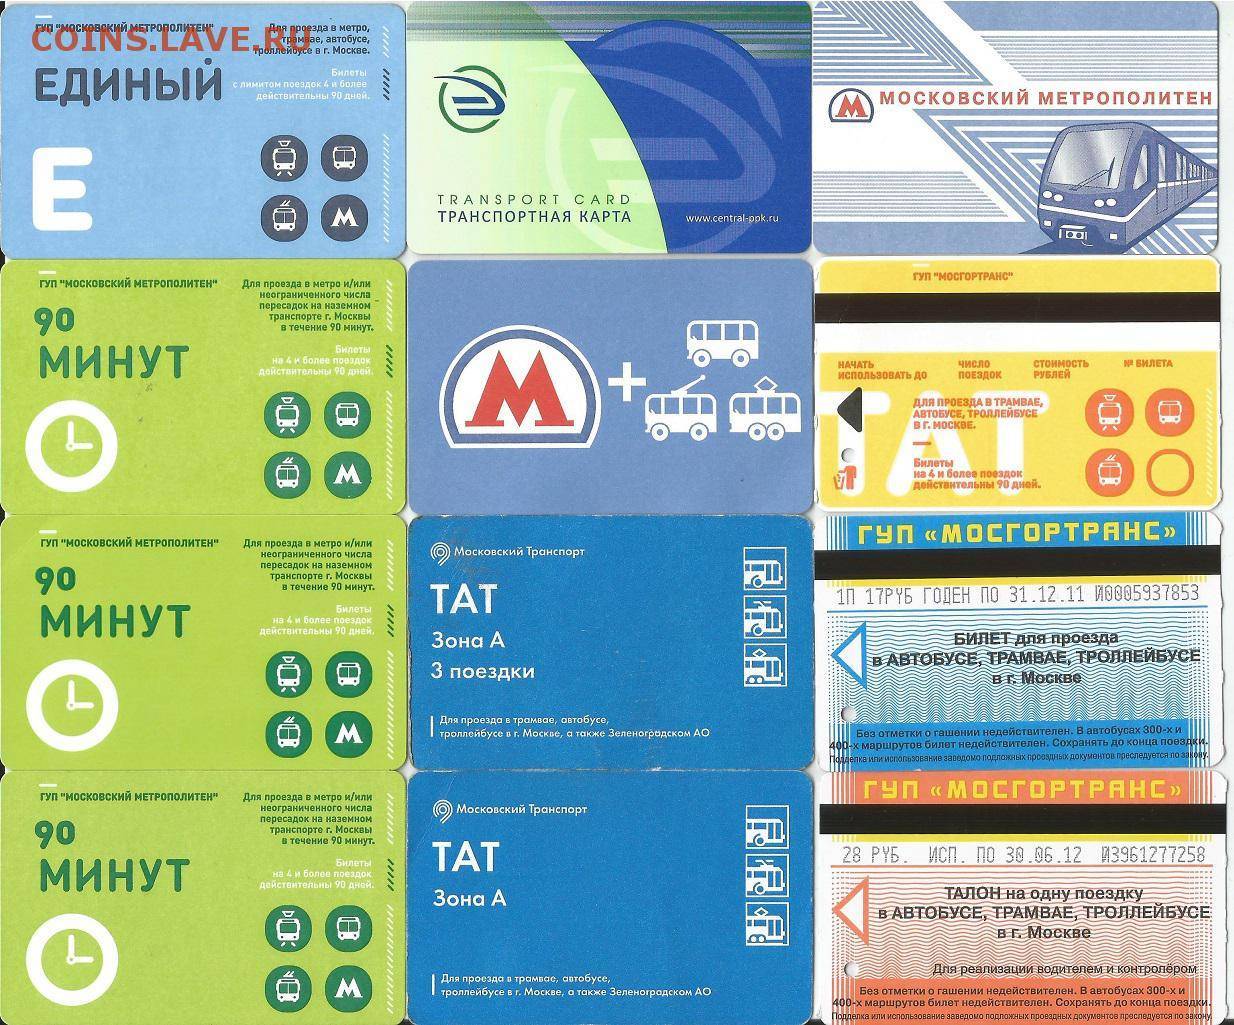 Как сэкономить на метро в москве и ездить в разы дешевле — лучшие способы 2022